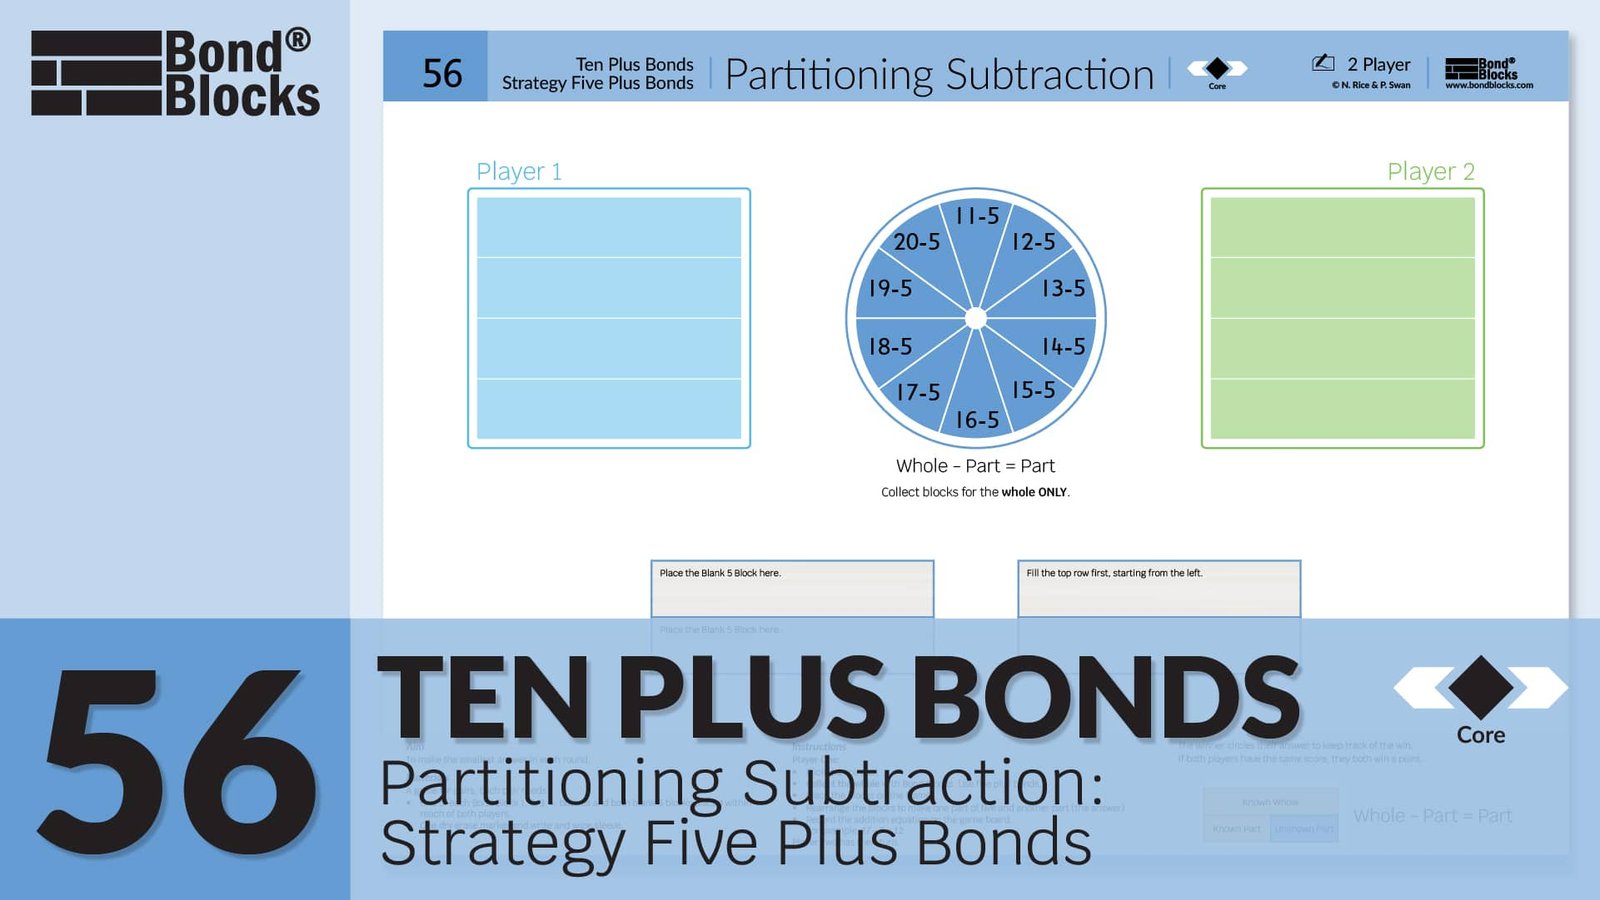 56.1 Partitioning Subtraction Strategy Five Plus Bonds